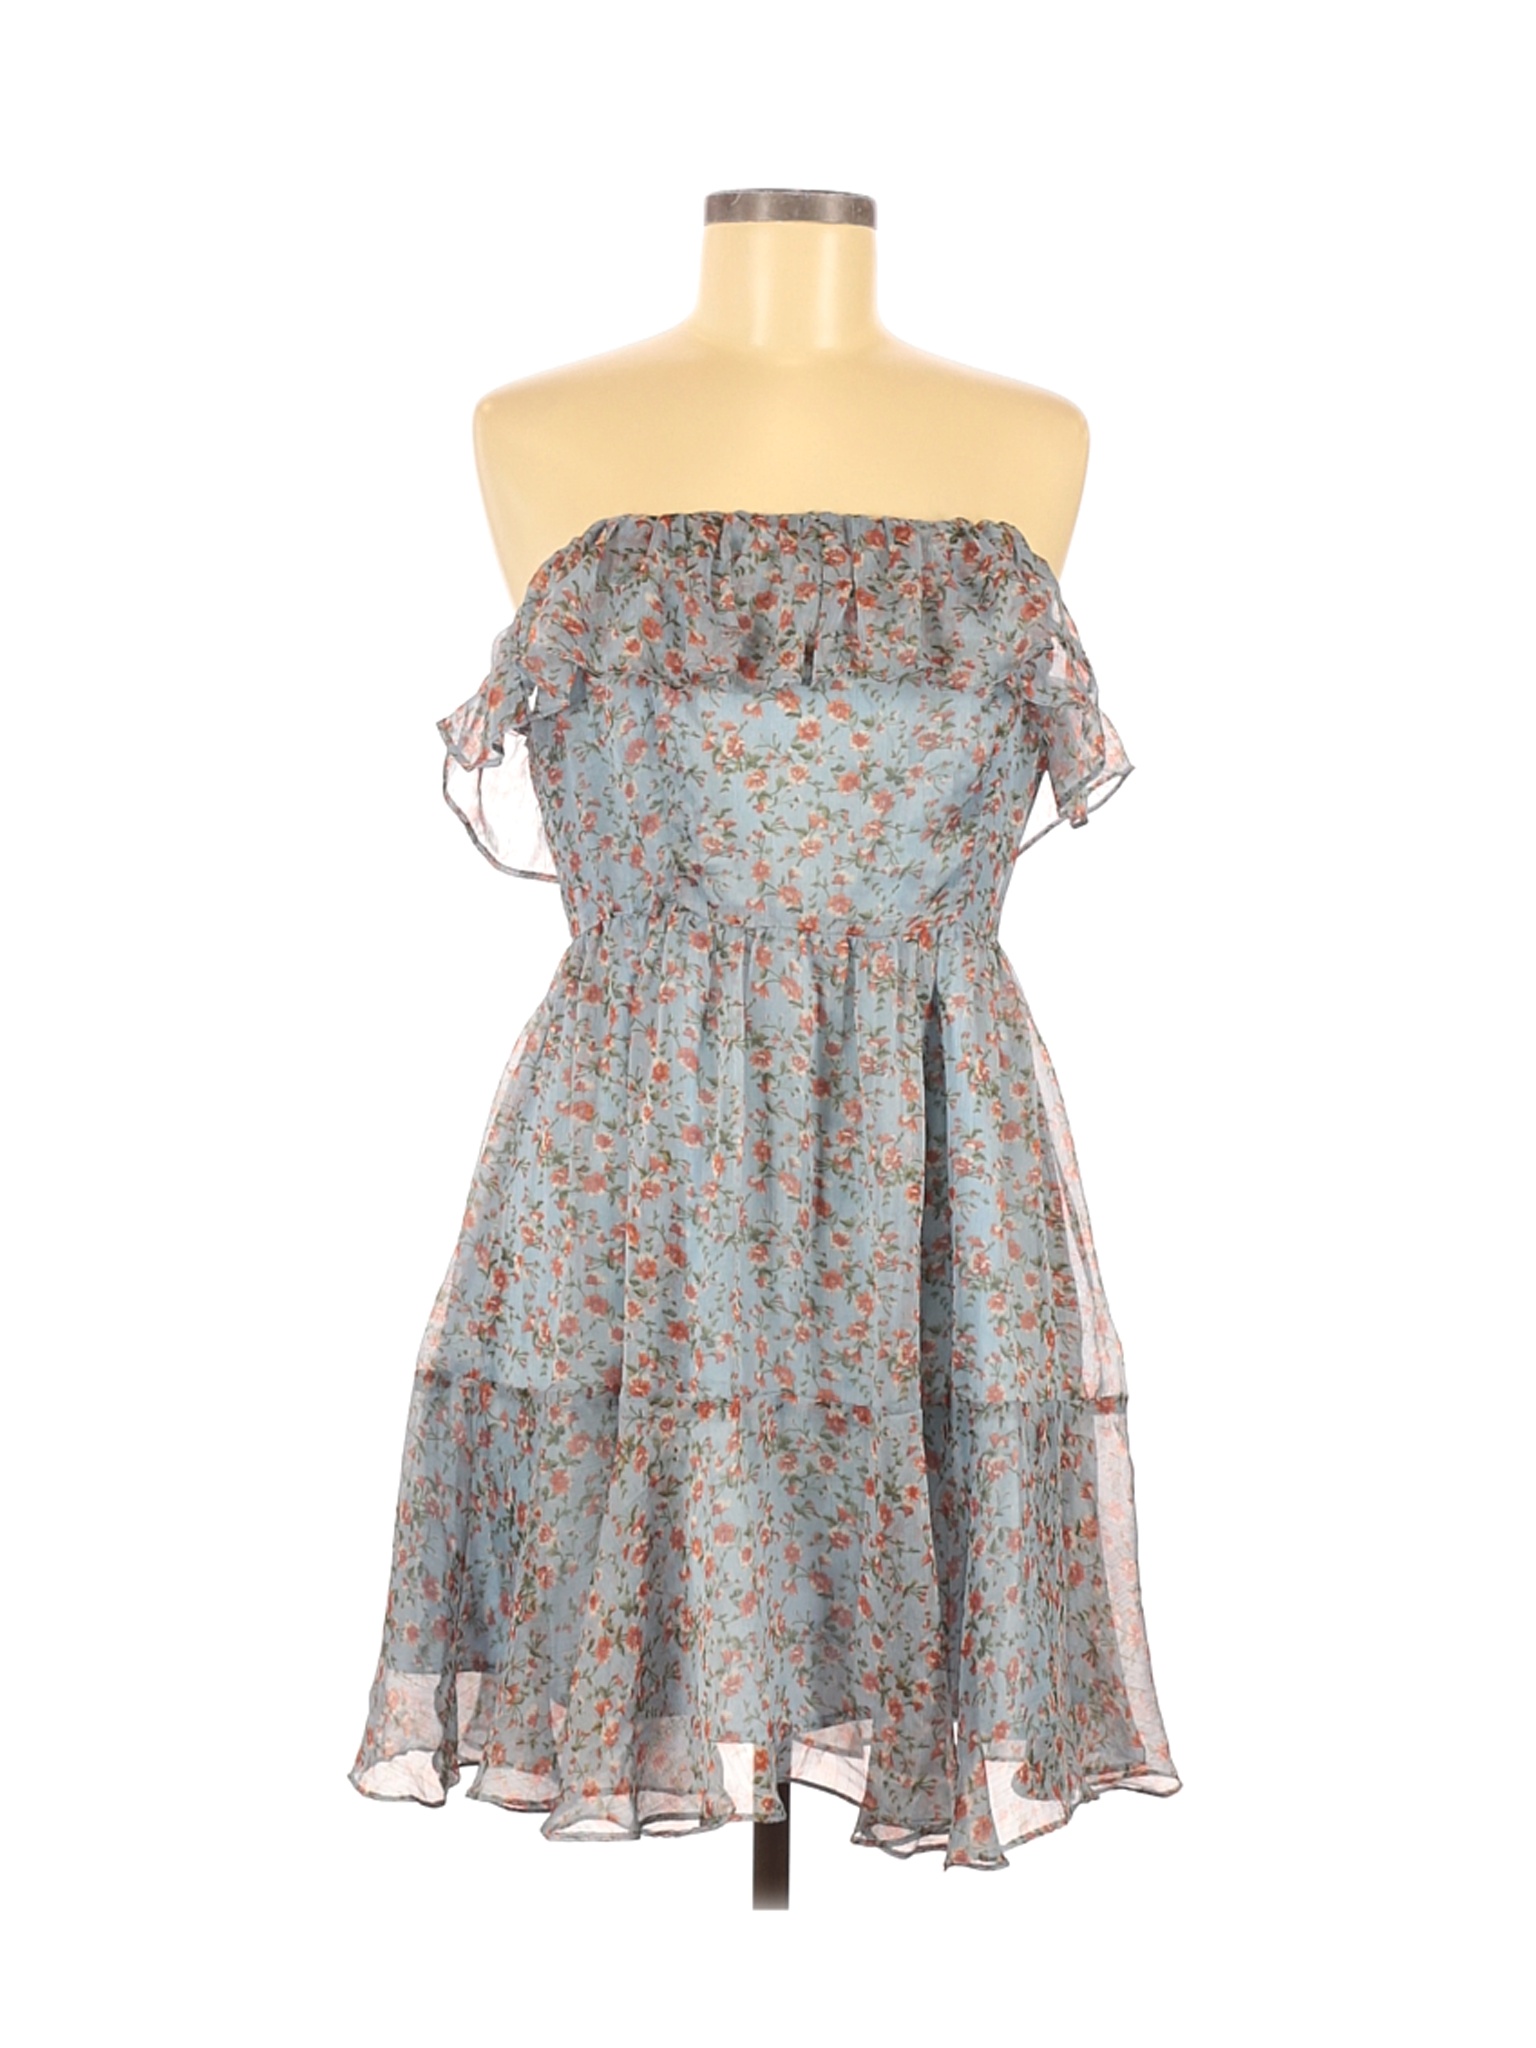 Lulu's Women Blue Casual Dress M | eBay